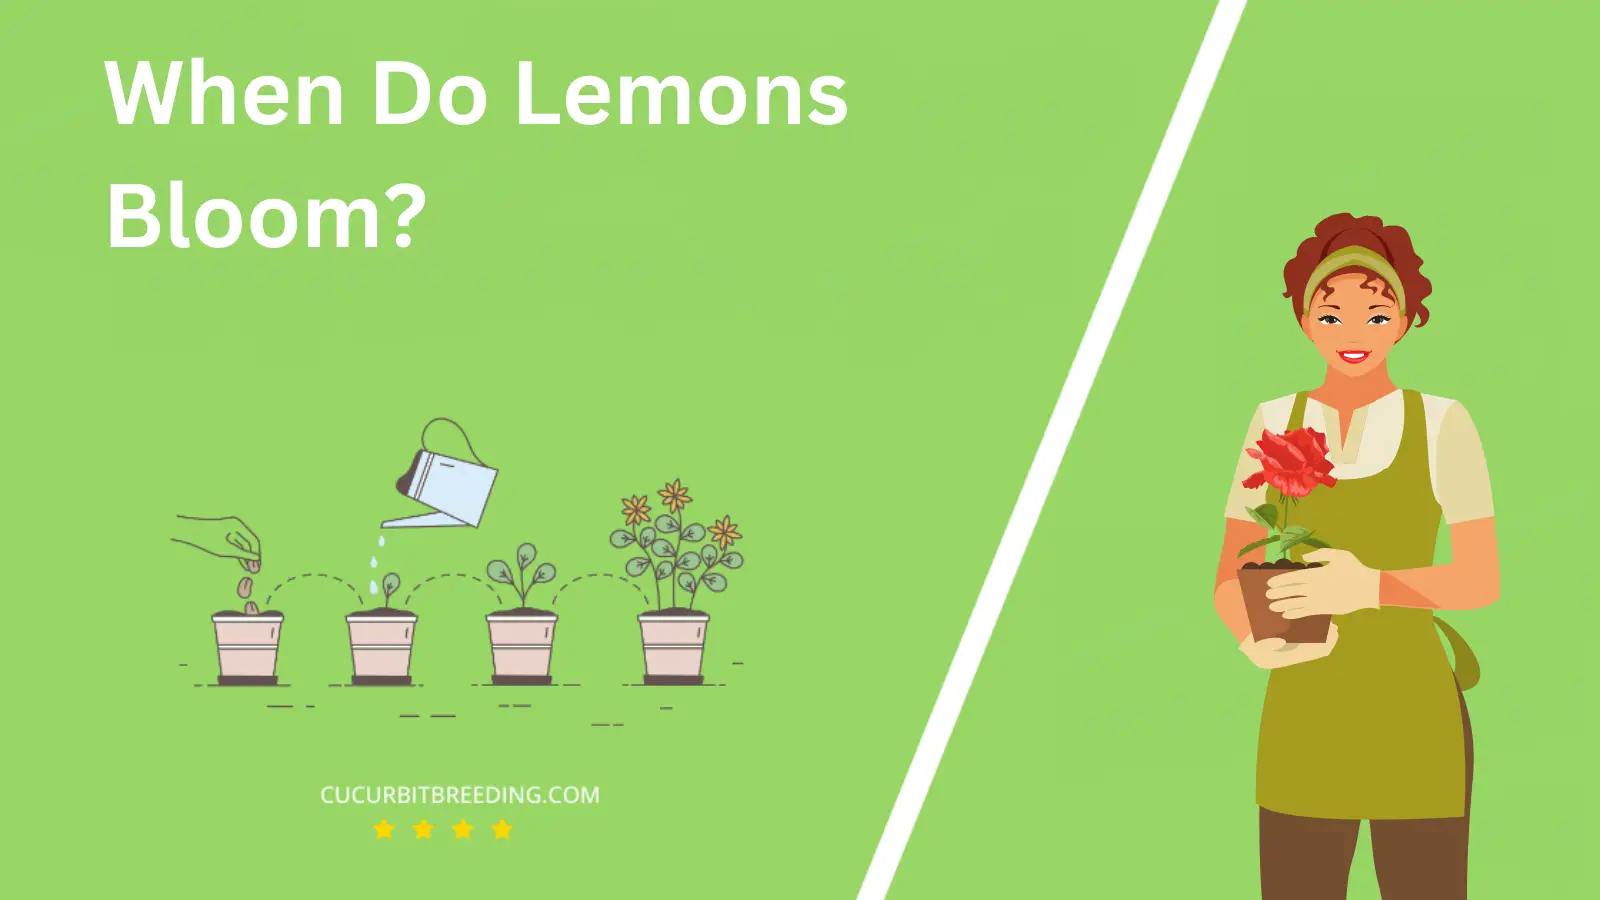 When Do Lemons Bloom?